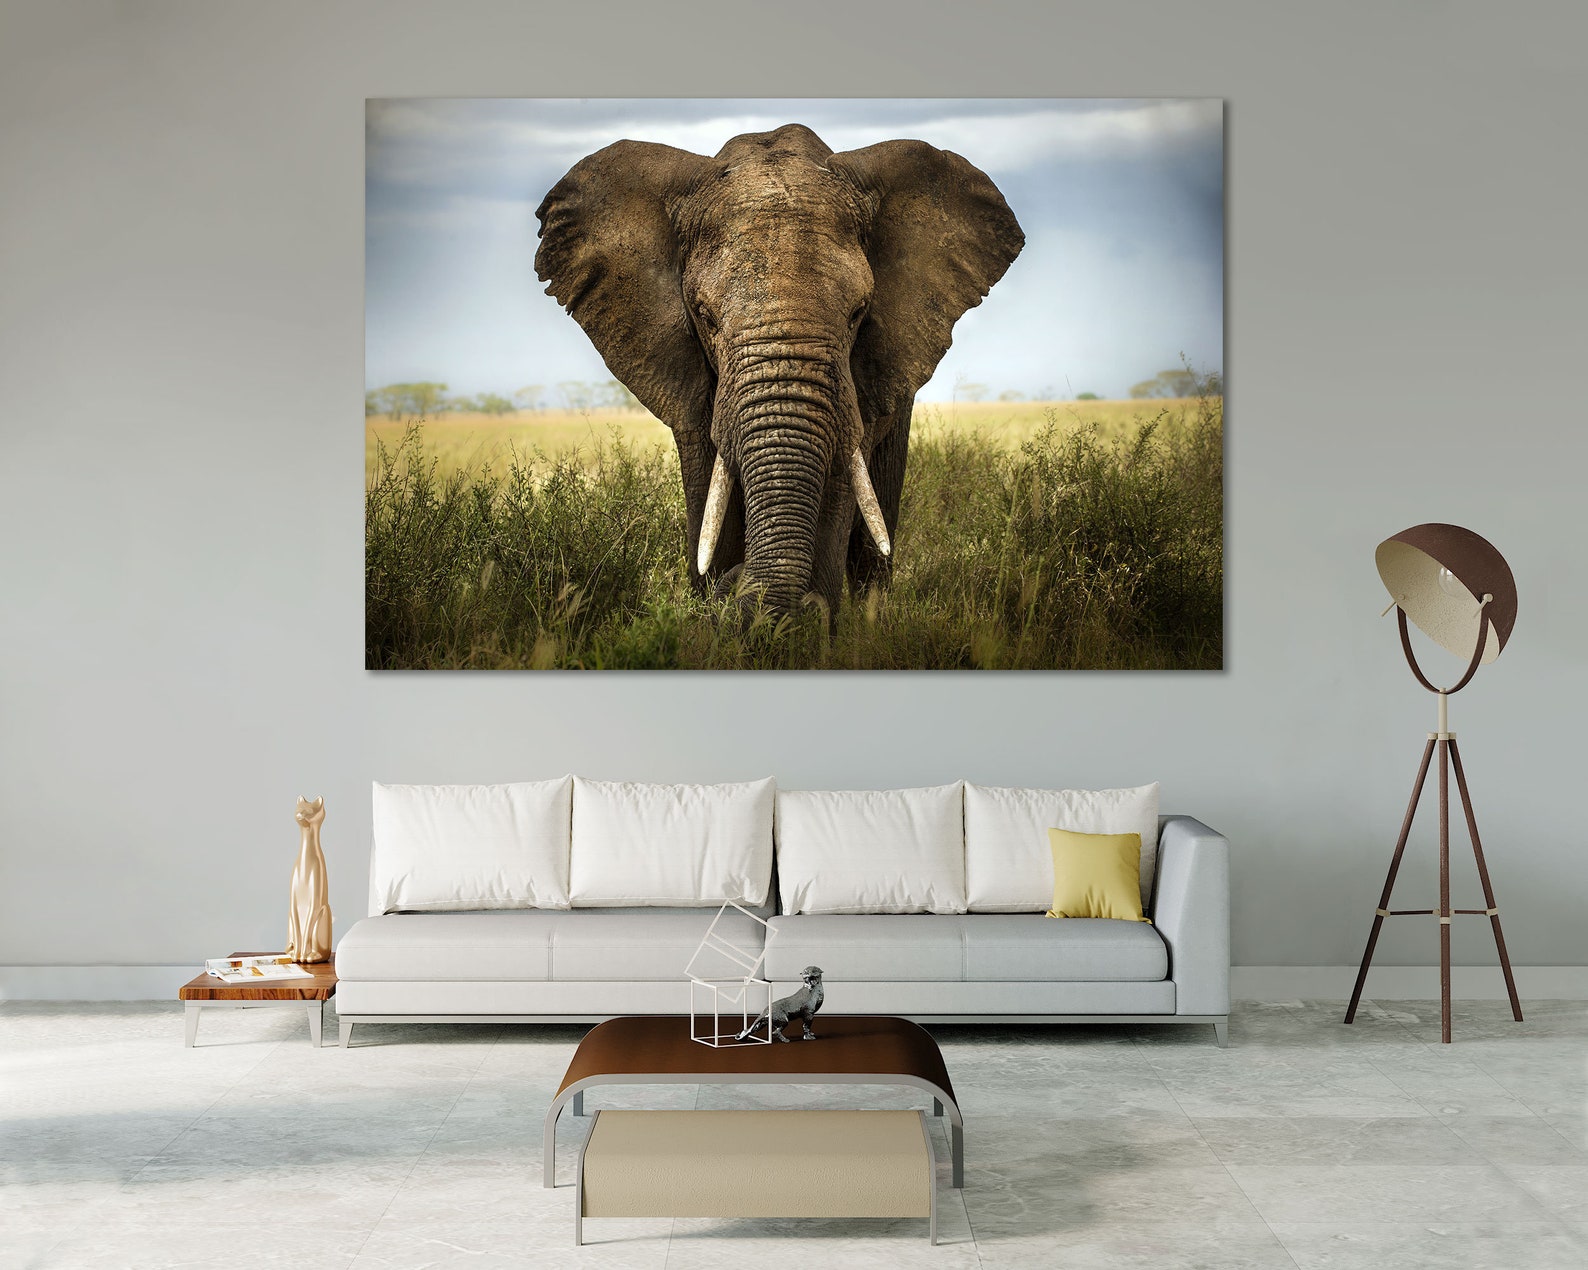 Elephant Wall Prints Art Decor Elephant Painting on Canvas Art - Etsy